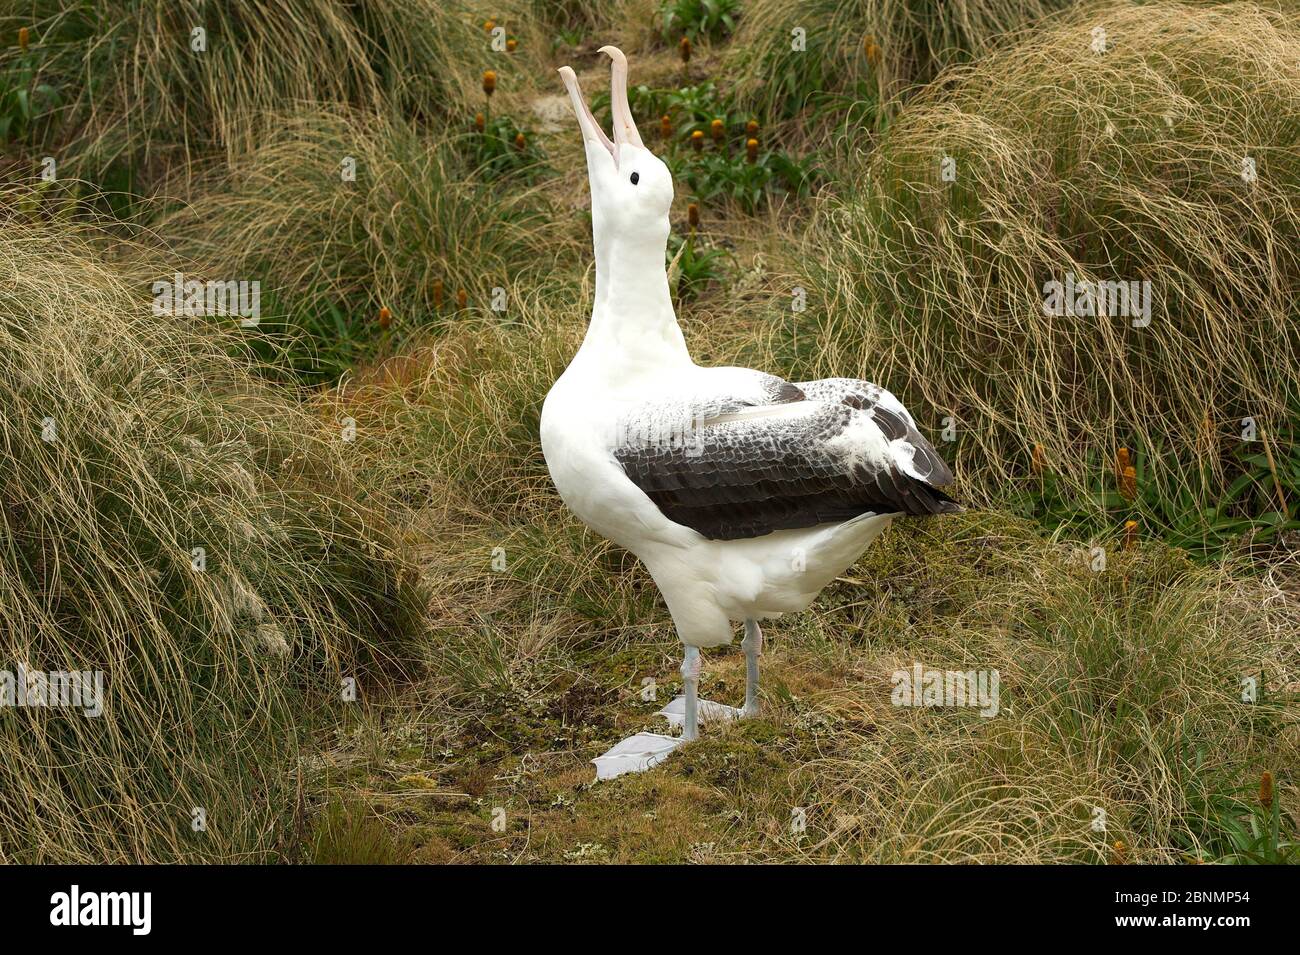 Albatros royal du sud (Diomedea epomophora) oiseau non apparié appelant à attirer d'autres albatros dans la région, île Campbell, sous-antarctique Nouvelle-Zélande Banque D'Images